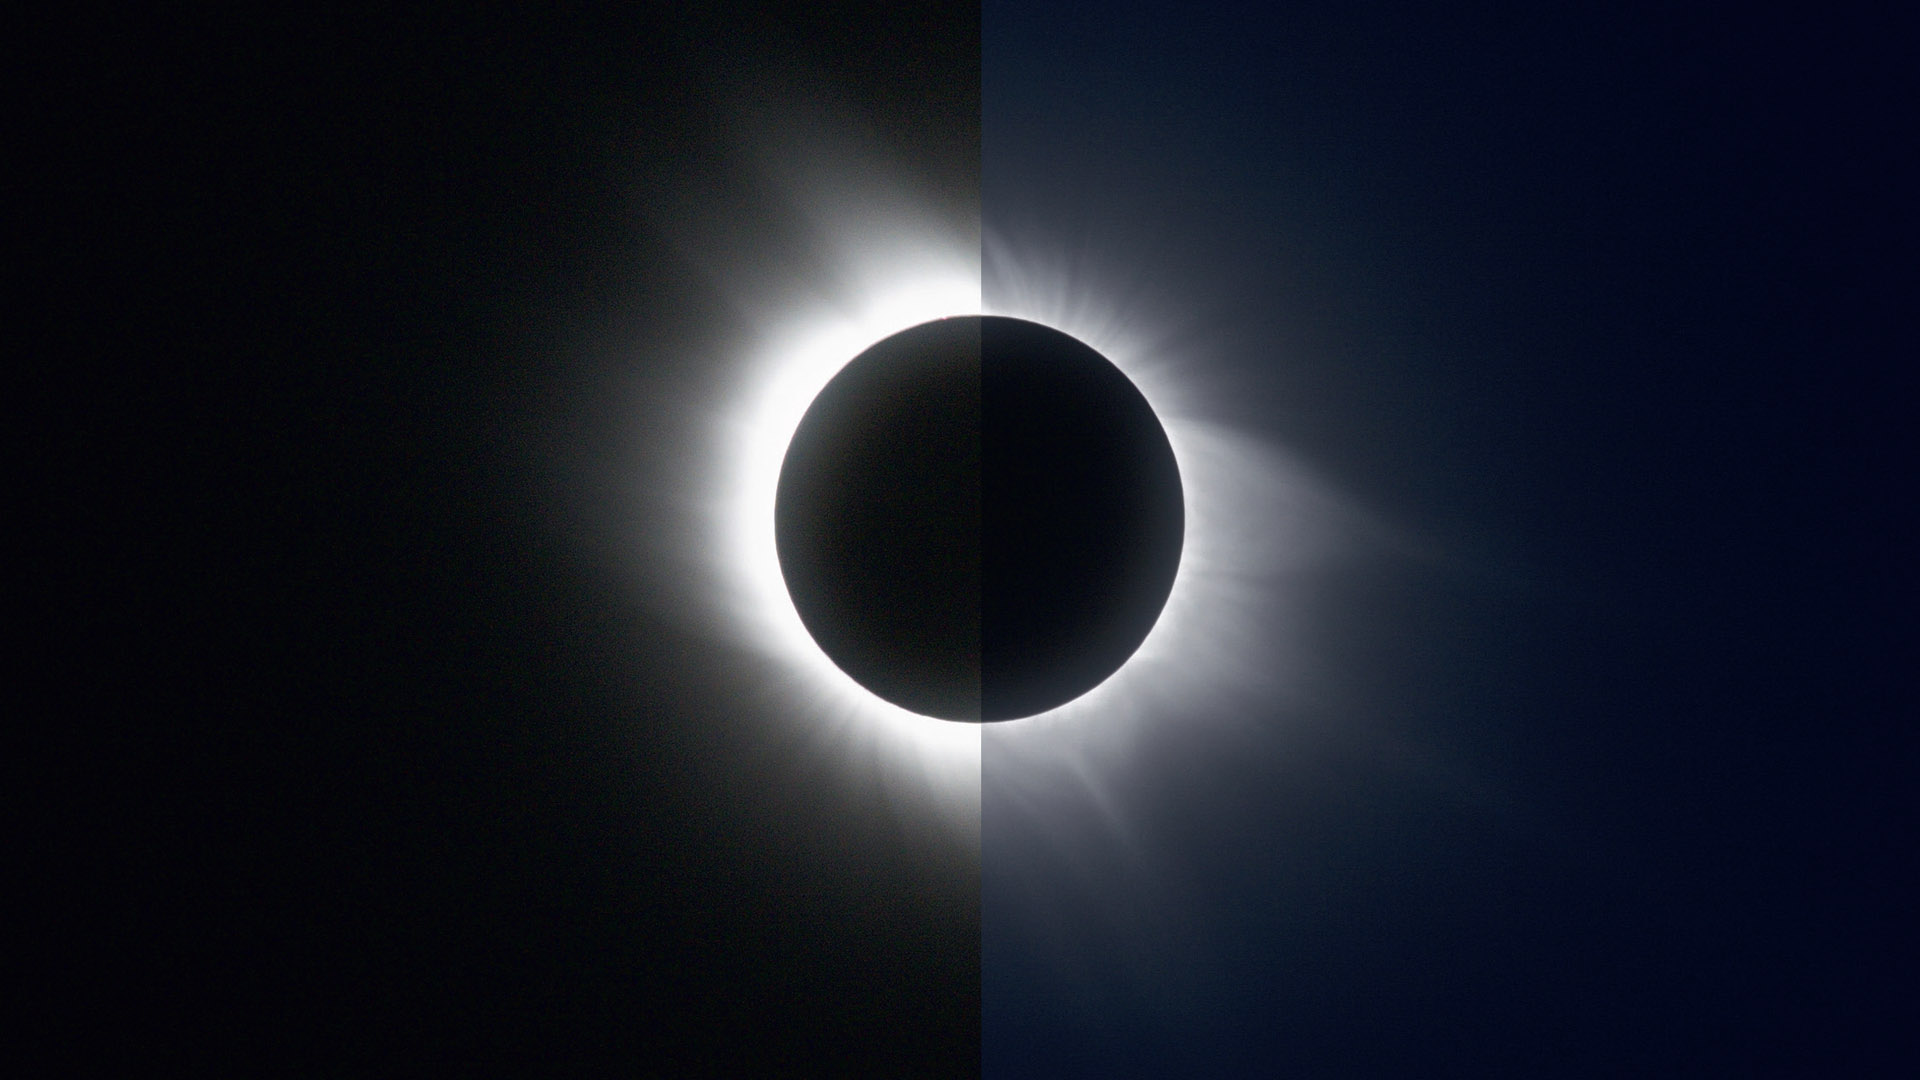 Zwei Ansichten
der totalen Sonnenfinsternis
2006: Links eine
Einzelbelichtung mit 1/8s
Belichtungszeit und rechts
ein HDR-Komposit aus
Aufnahmen mit 1/8s bis
1/1000s Belichtungszeit. M.Weigand